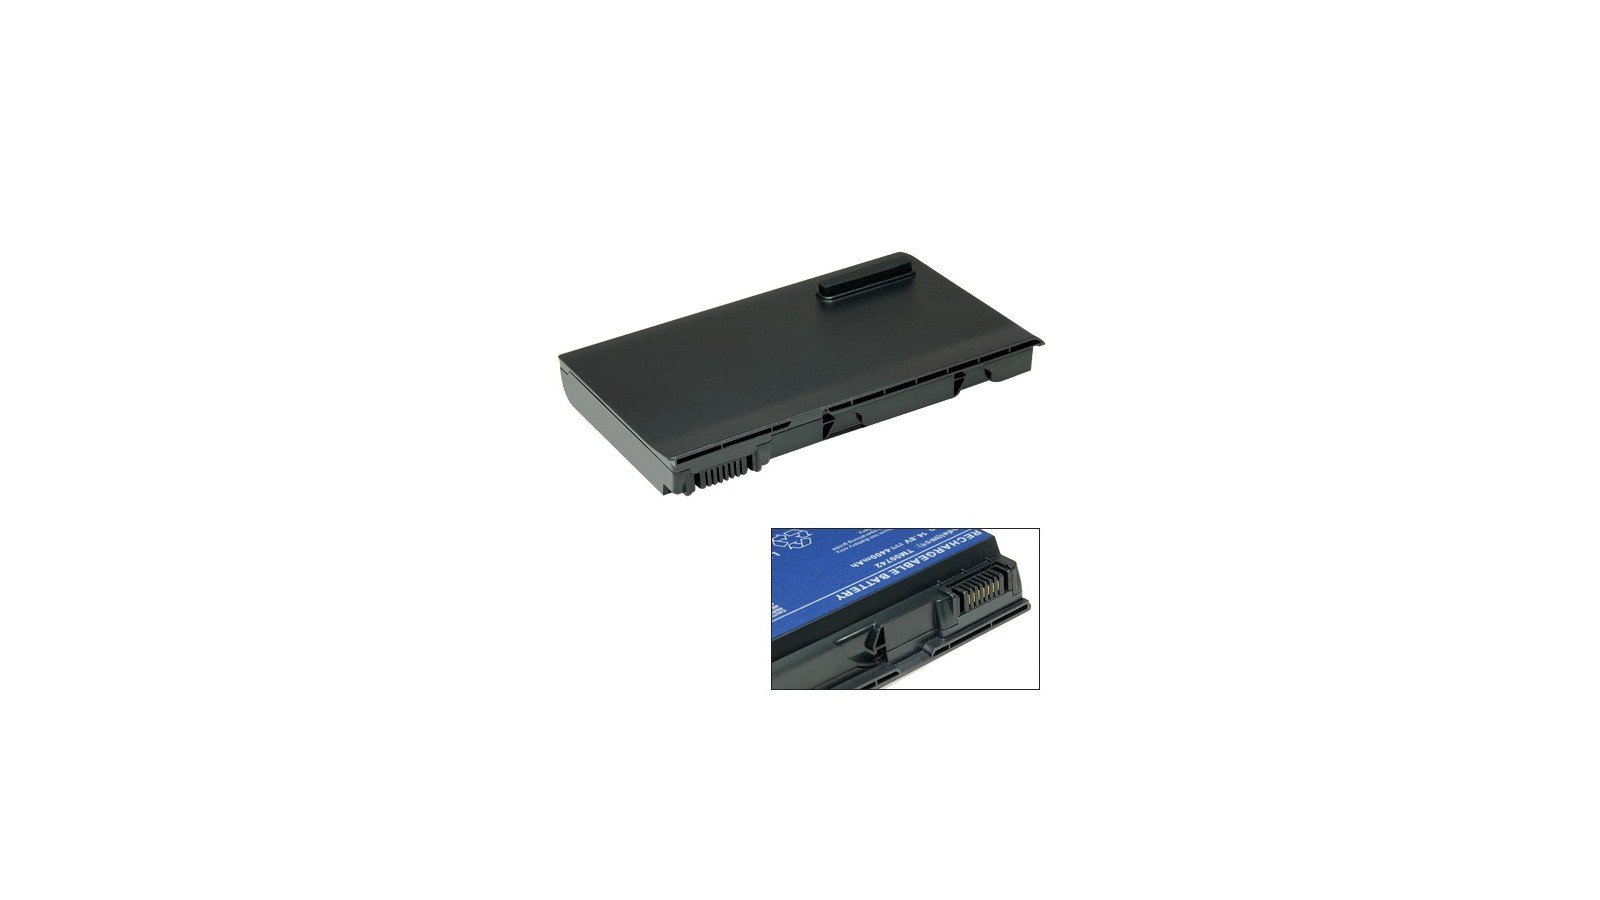 Batteria compatibile con Acer Extensa 4620 / 5000 / 5210 / 5220 / 5620 / TravelMate 5220 5310 5320 5520 5620 5710 5720 5730 6410